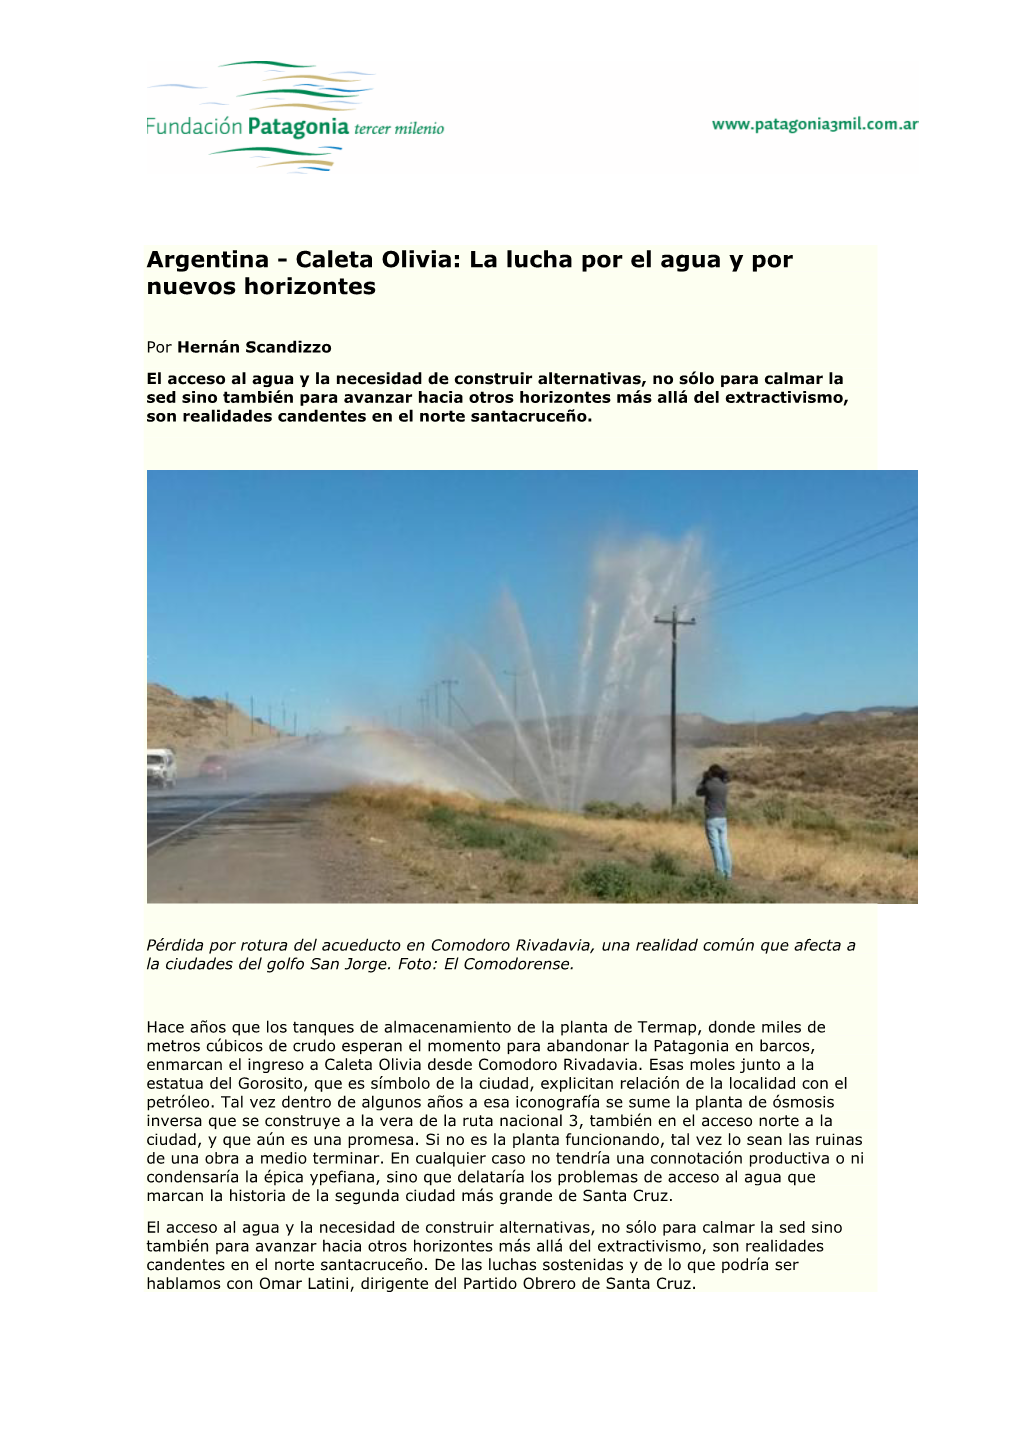 Argentina - Caleta Olivia: La Lucha Por El Agua Y Por Nuevos Horizontes